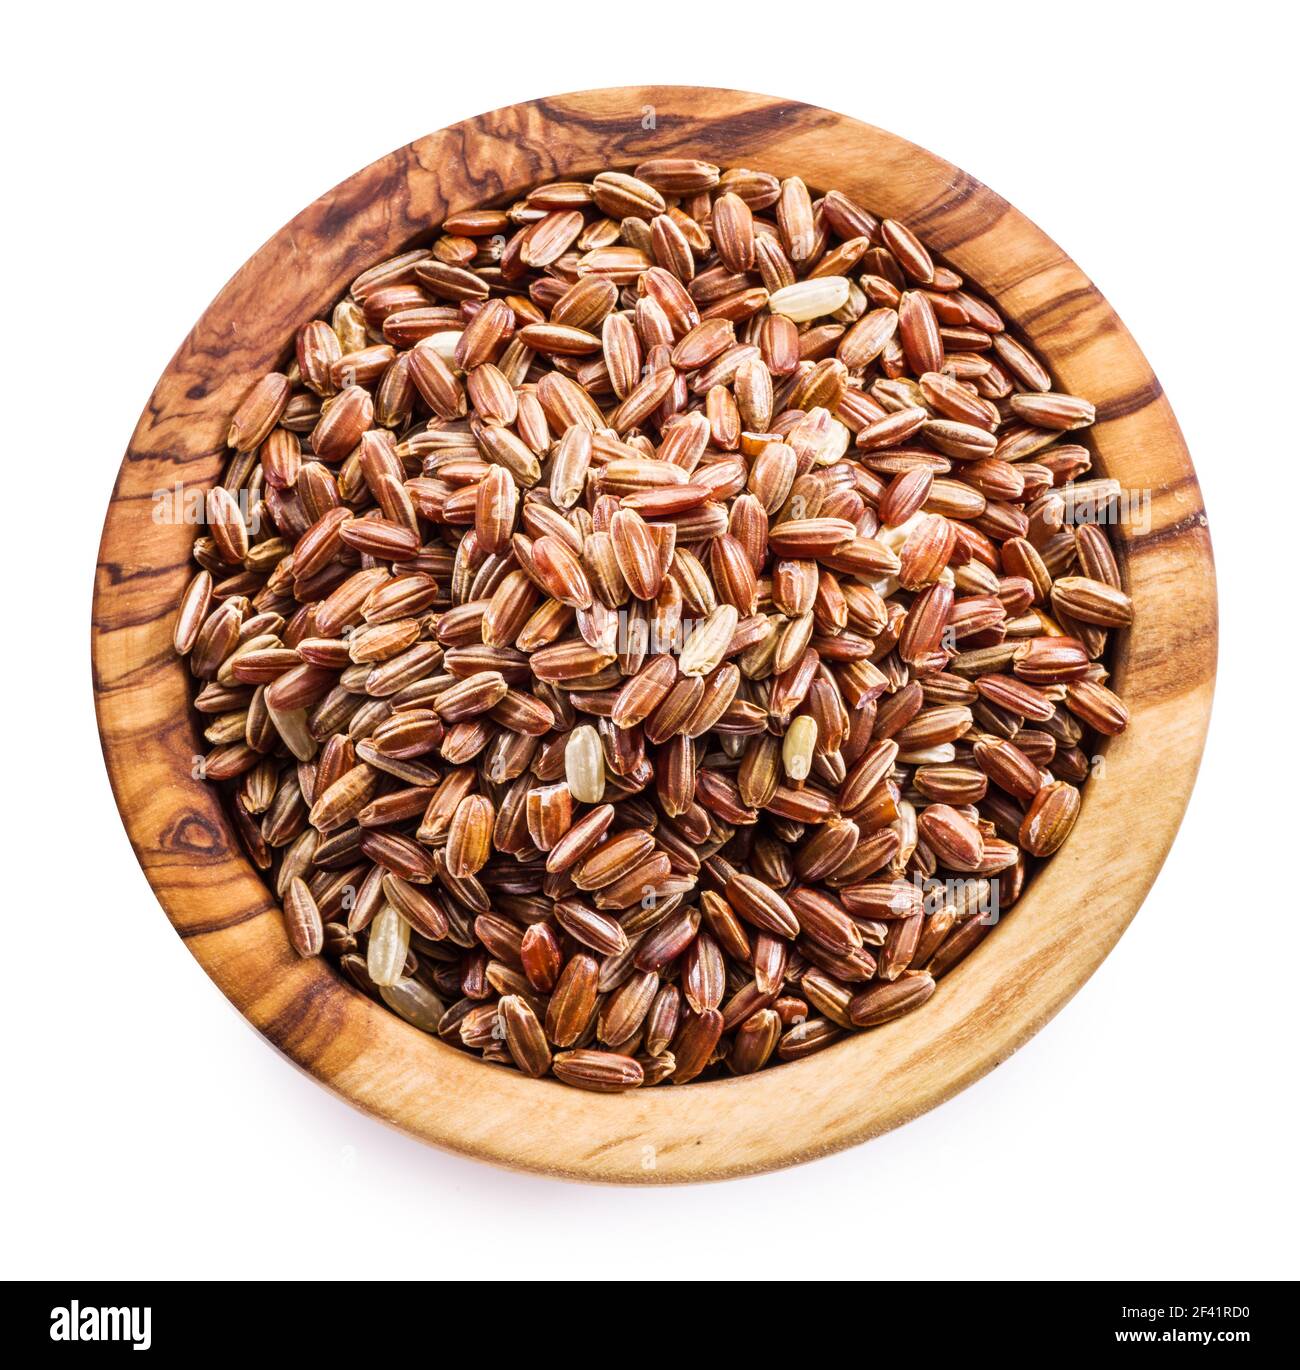 Riz brun - riz à grains entiers avec coque extérieure ou huche dans un bol en bois sur fond blanc. Vue de dessus. Le fichier contient un chemin d'écrêtage. Banque D'Images